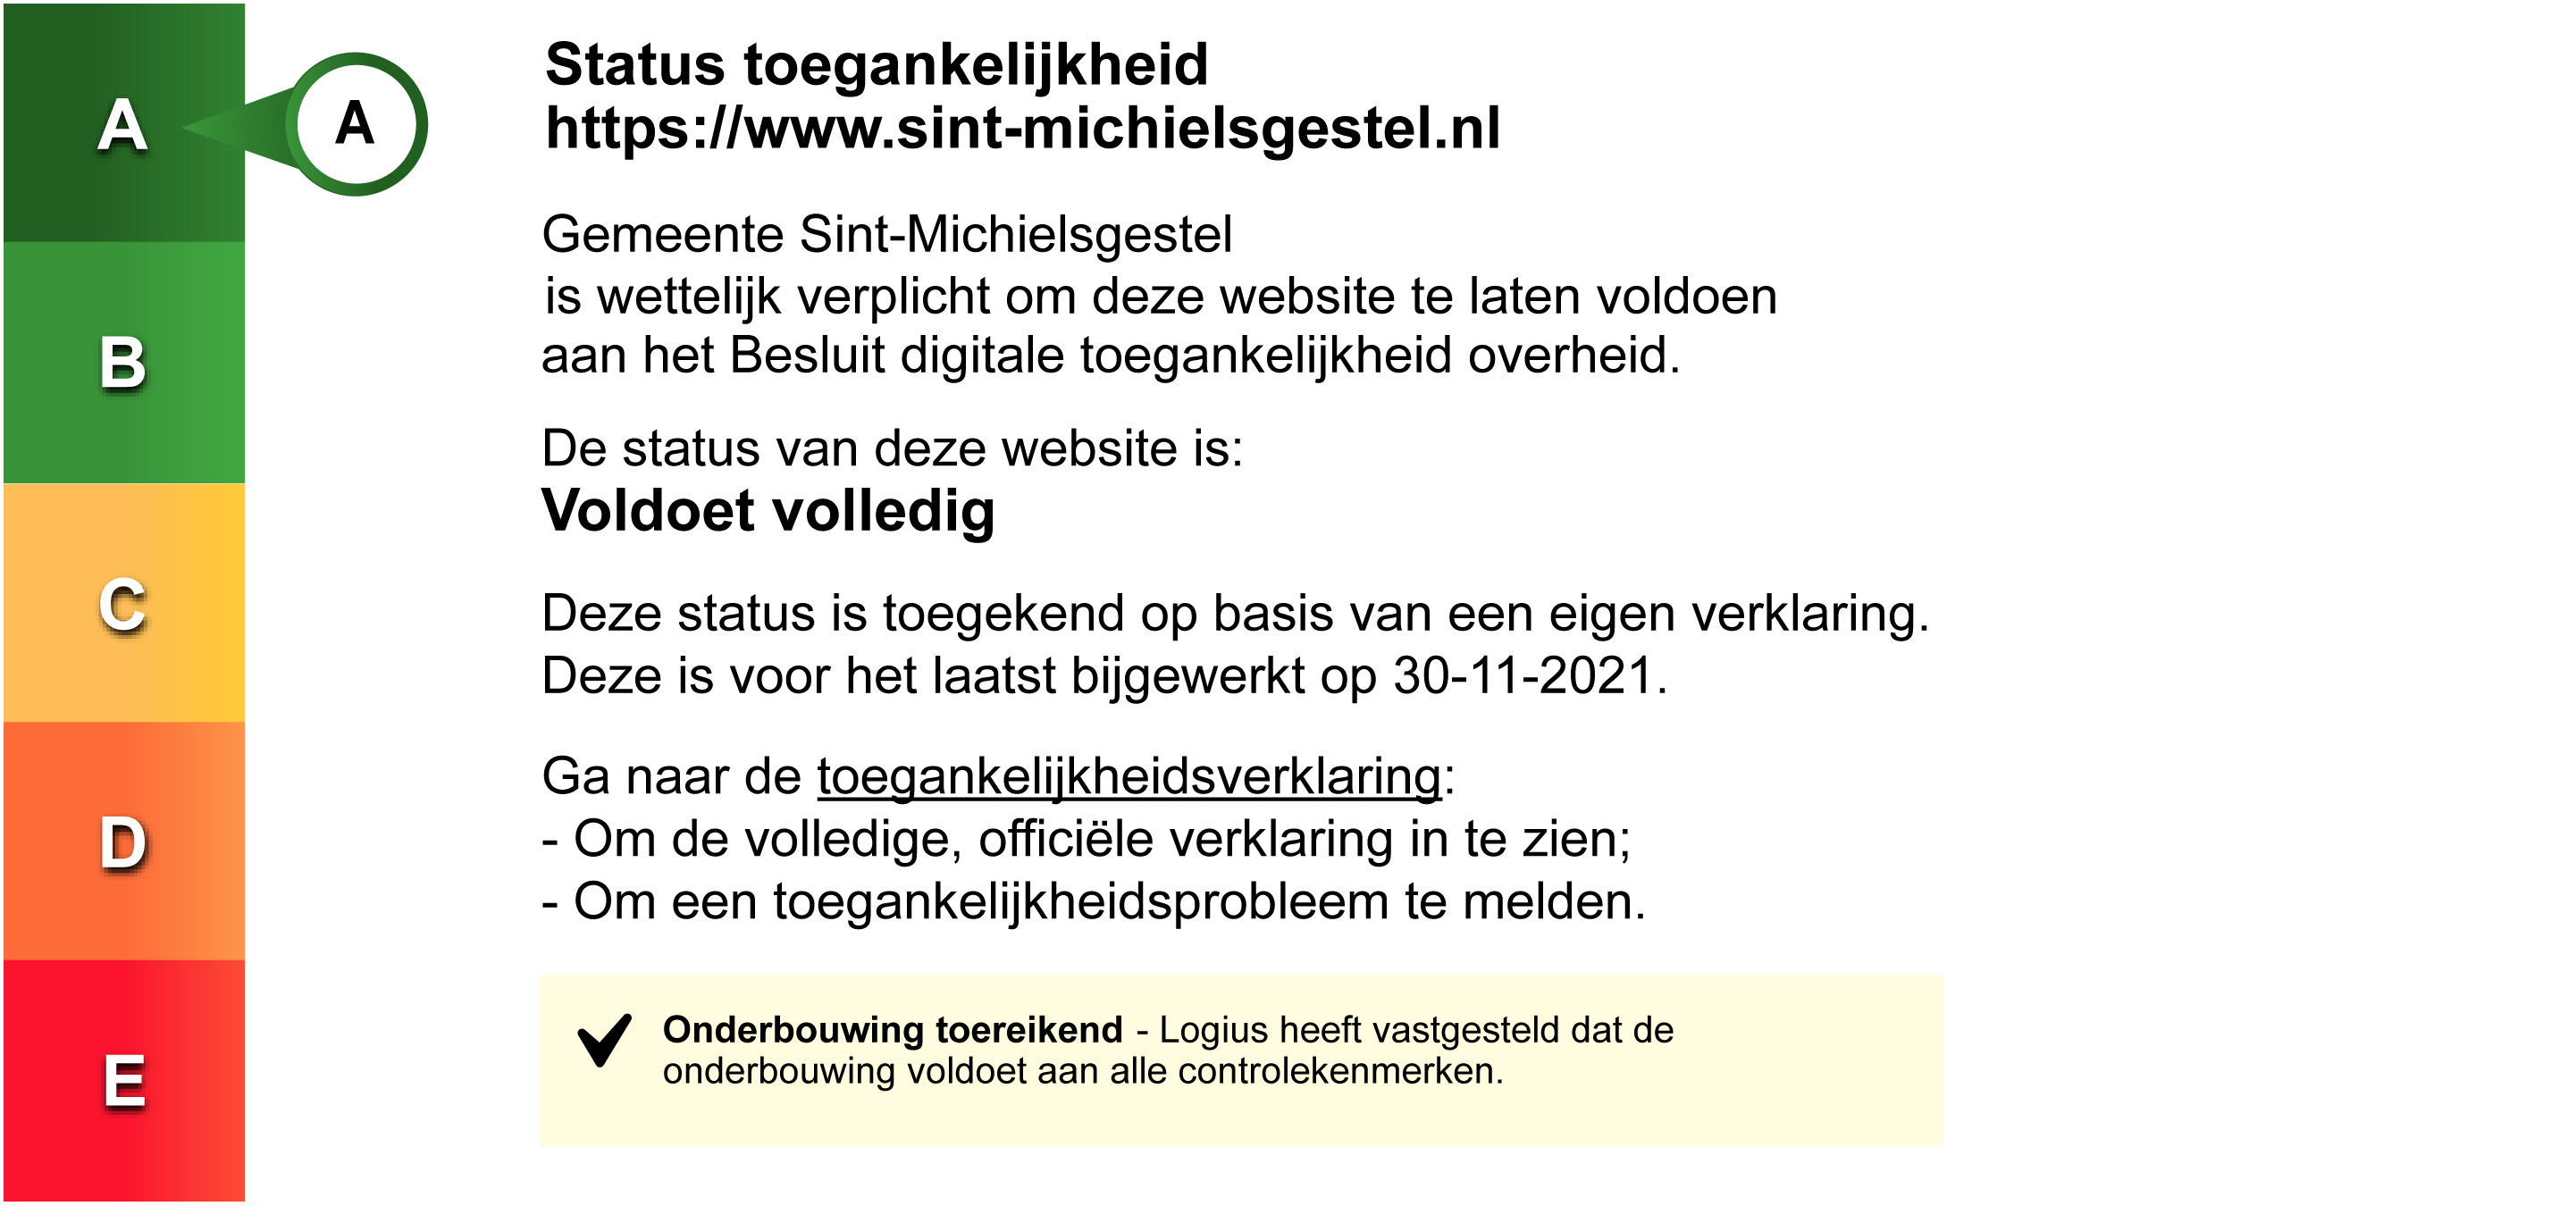 Status toegankelijkheidslabel van Gemeente Sint-Michielsgestel. Volg de link voor de volledige toegankelijkheidsverklaring.